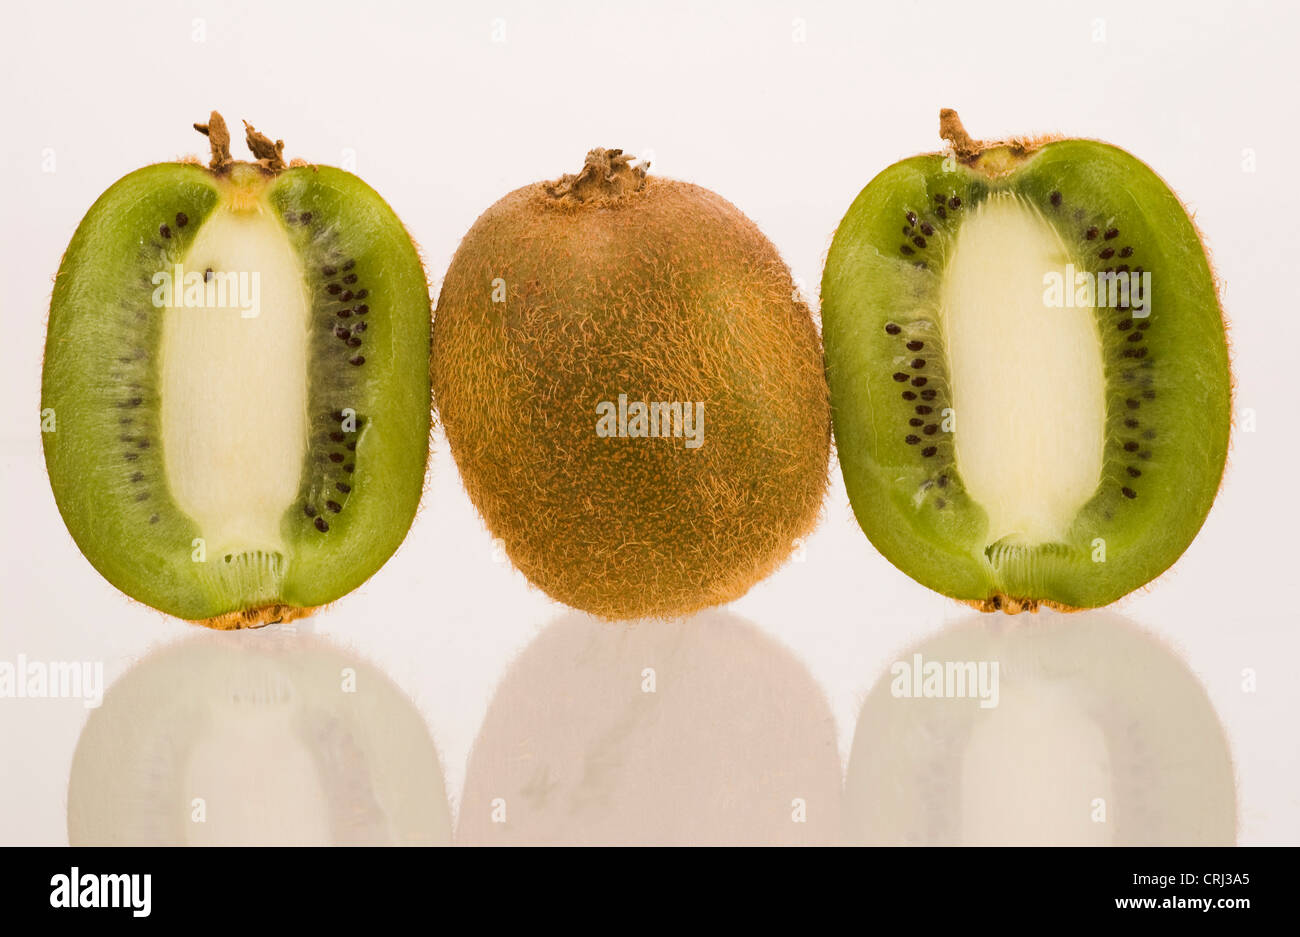 Los kiwis en rodajas. El kiwi es una rica fuente de vitamina C y contiene vitaminas A y E. Foto de stock